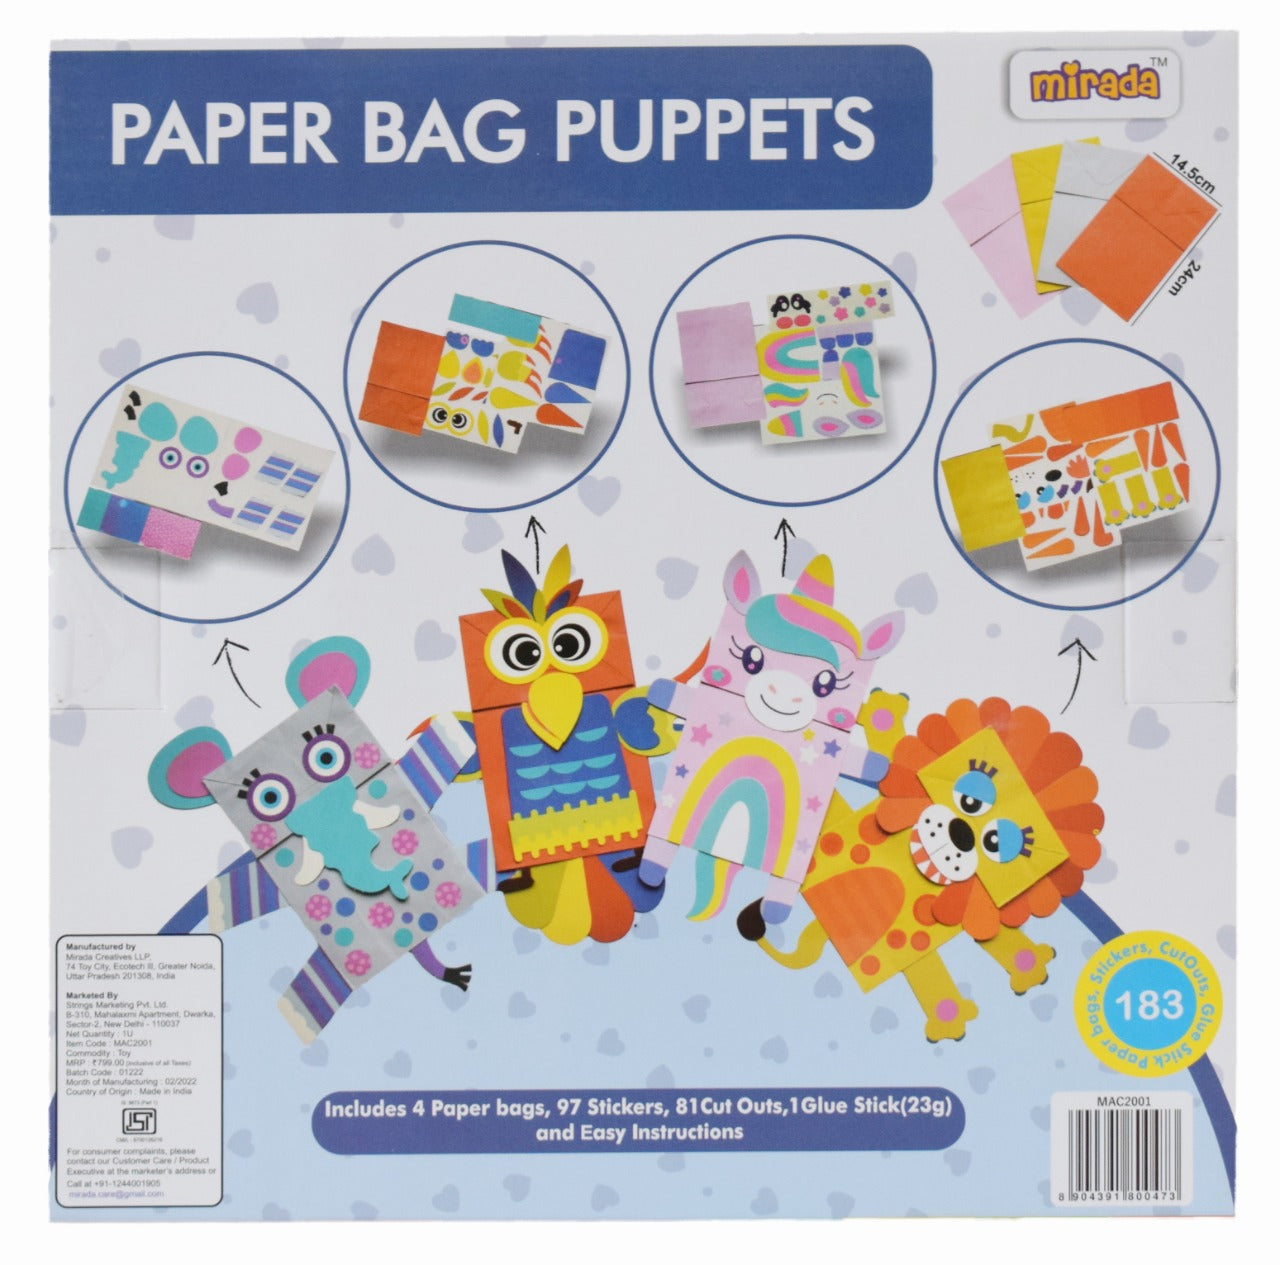 Pet Paper Bag Puppets craft activity guide | Baker Ross